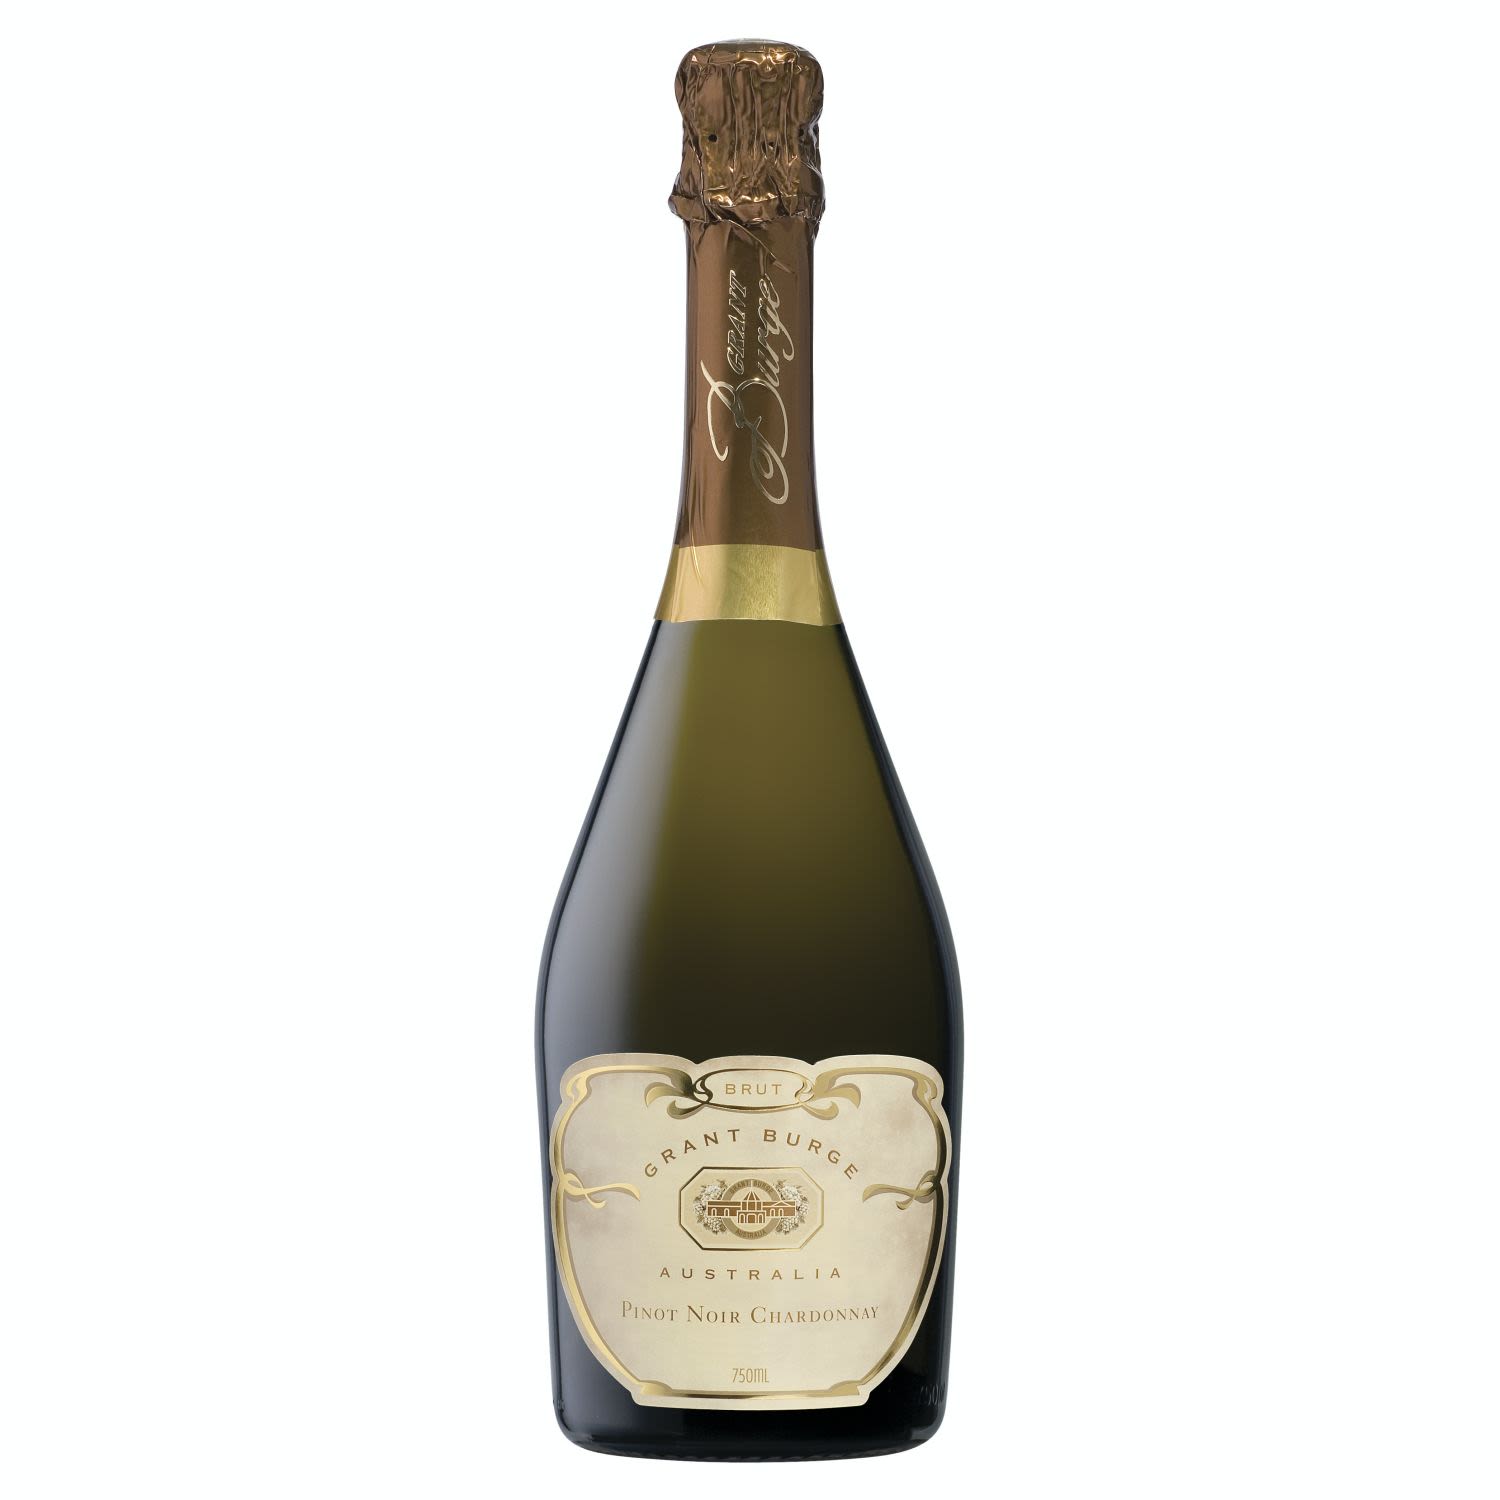 Grant Burge Pinot Noir Chardonnay 750mL<br /> <br />Alcohol Volume: 12.50%<br /><br />Pack Format: Bottle<br /><br />Standard Drinks: 7.4</br /><br />Pack Type: Bottle<br /><br />Country of Origin: Australia<br /><br />Region: Multi-Regional Blend<br /><br />Vintage: Non Vintage<br />